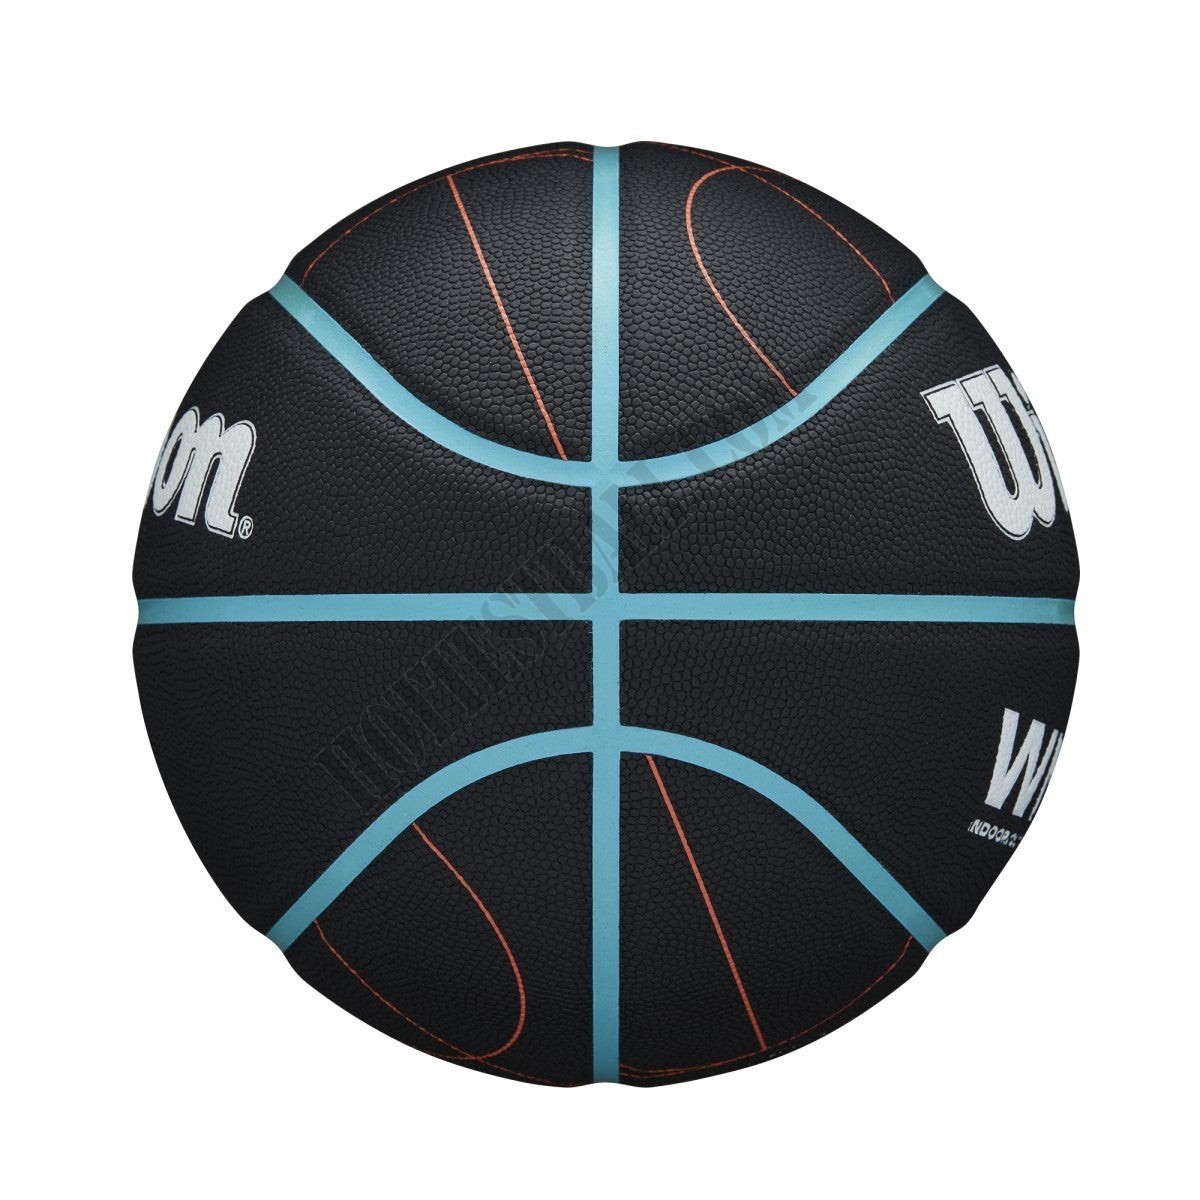 WNBA Heir Court Indoor/Outdoor Basketball - Wilson Discount Store - -4